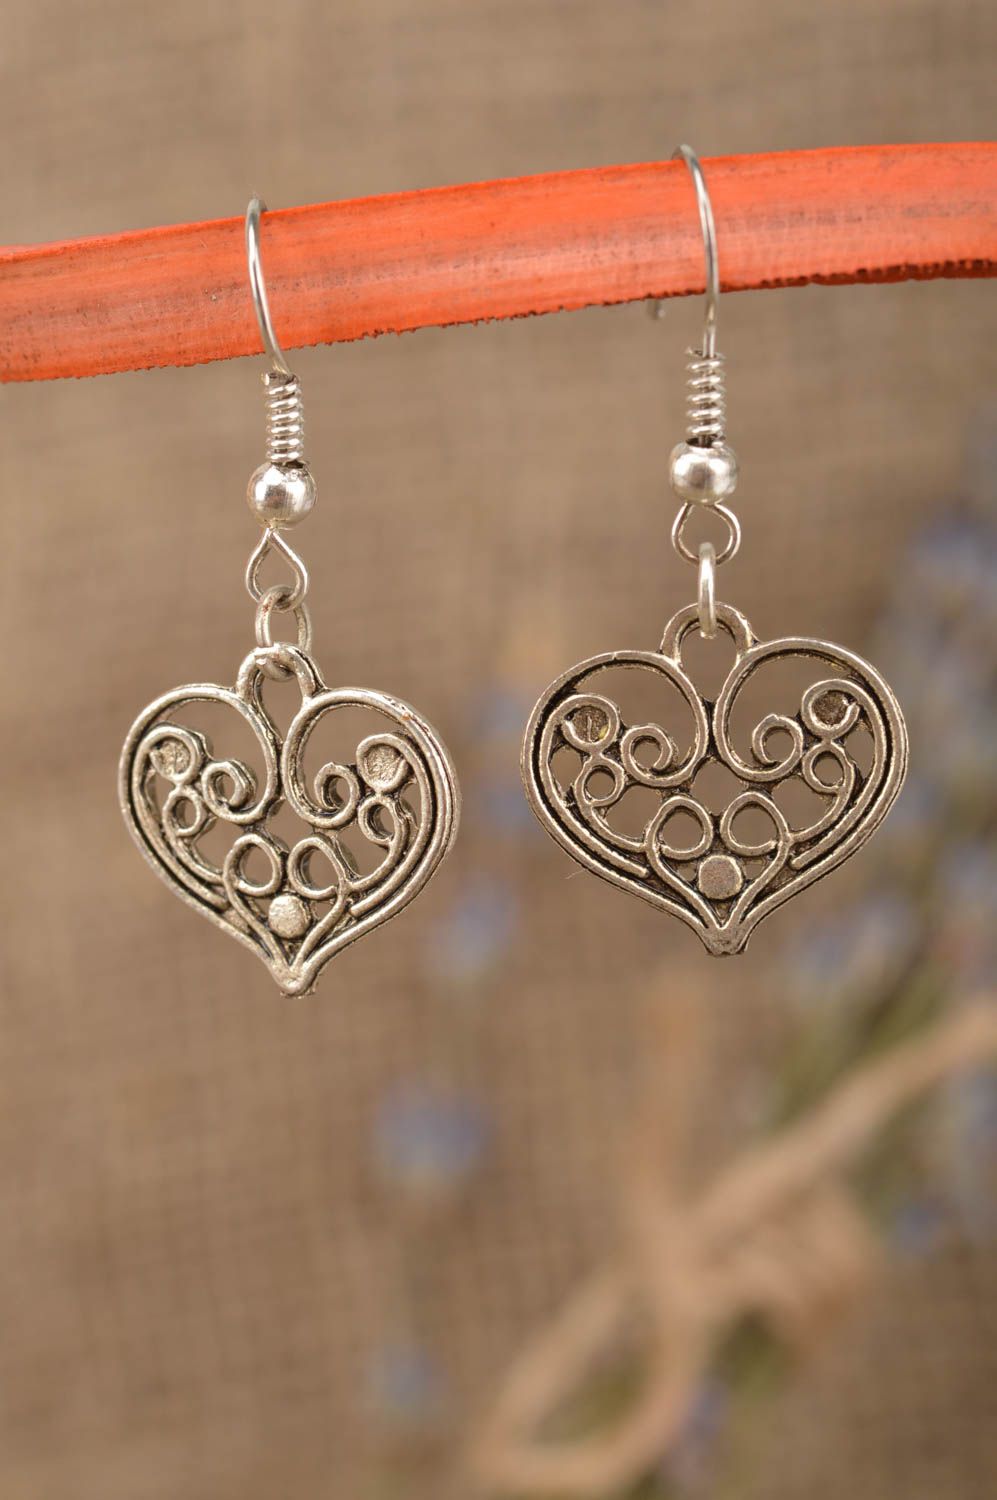 Красивые оригинальные женские серьги из металла ручной работы Сердце ажурное фото 1